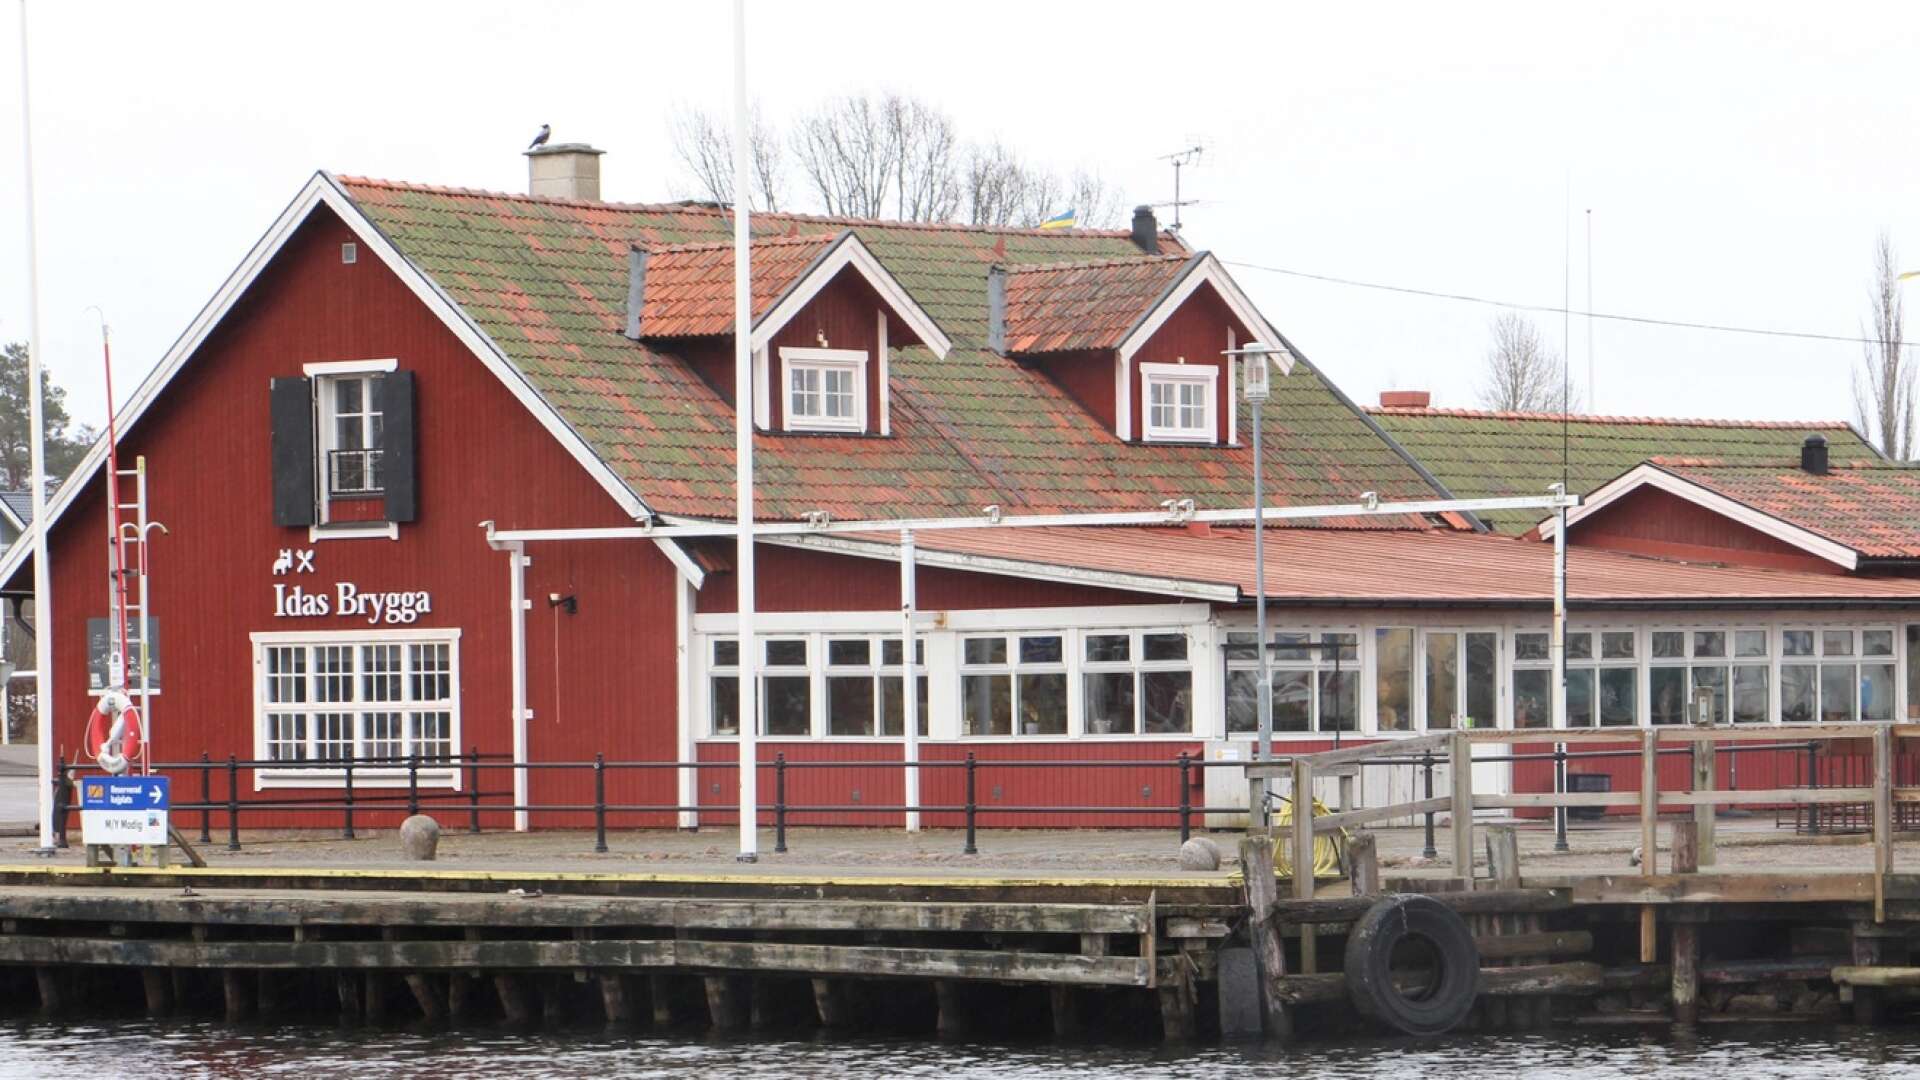 Spendrups villa ha betalt av borgensmännen och konkursbolaget bakom tidigare ägare av Idas brygga. Efter en andra runda i rätten vinner de målet.